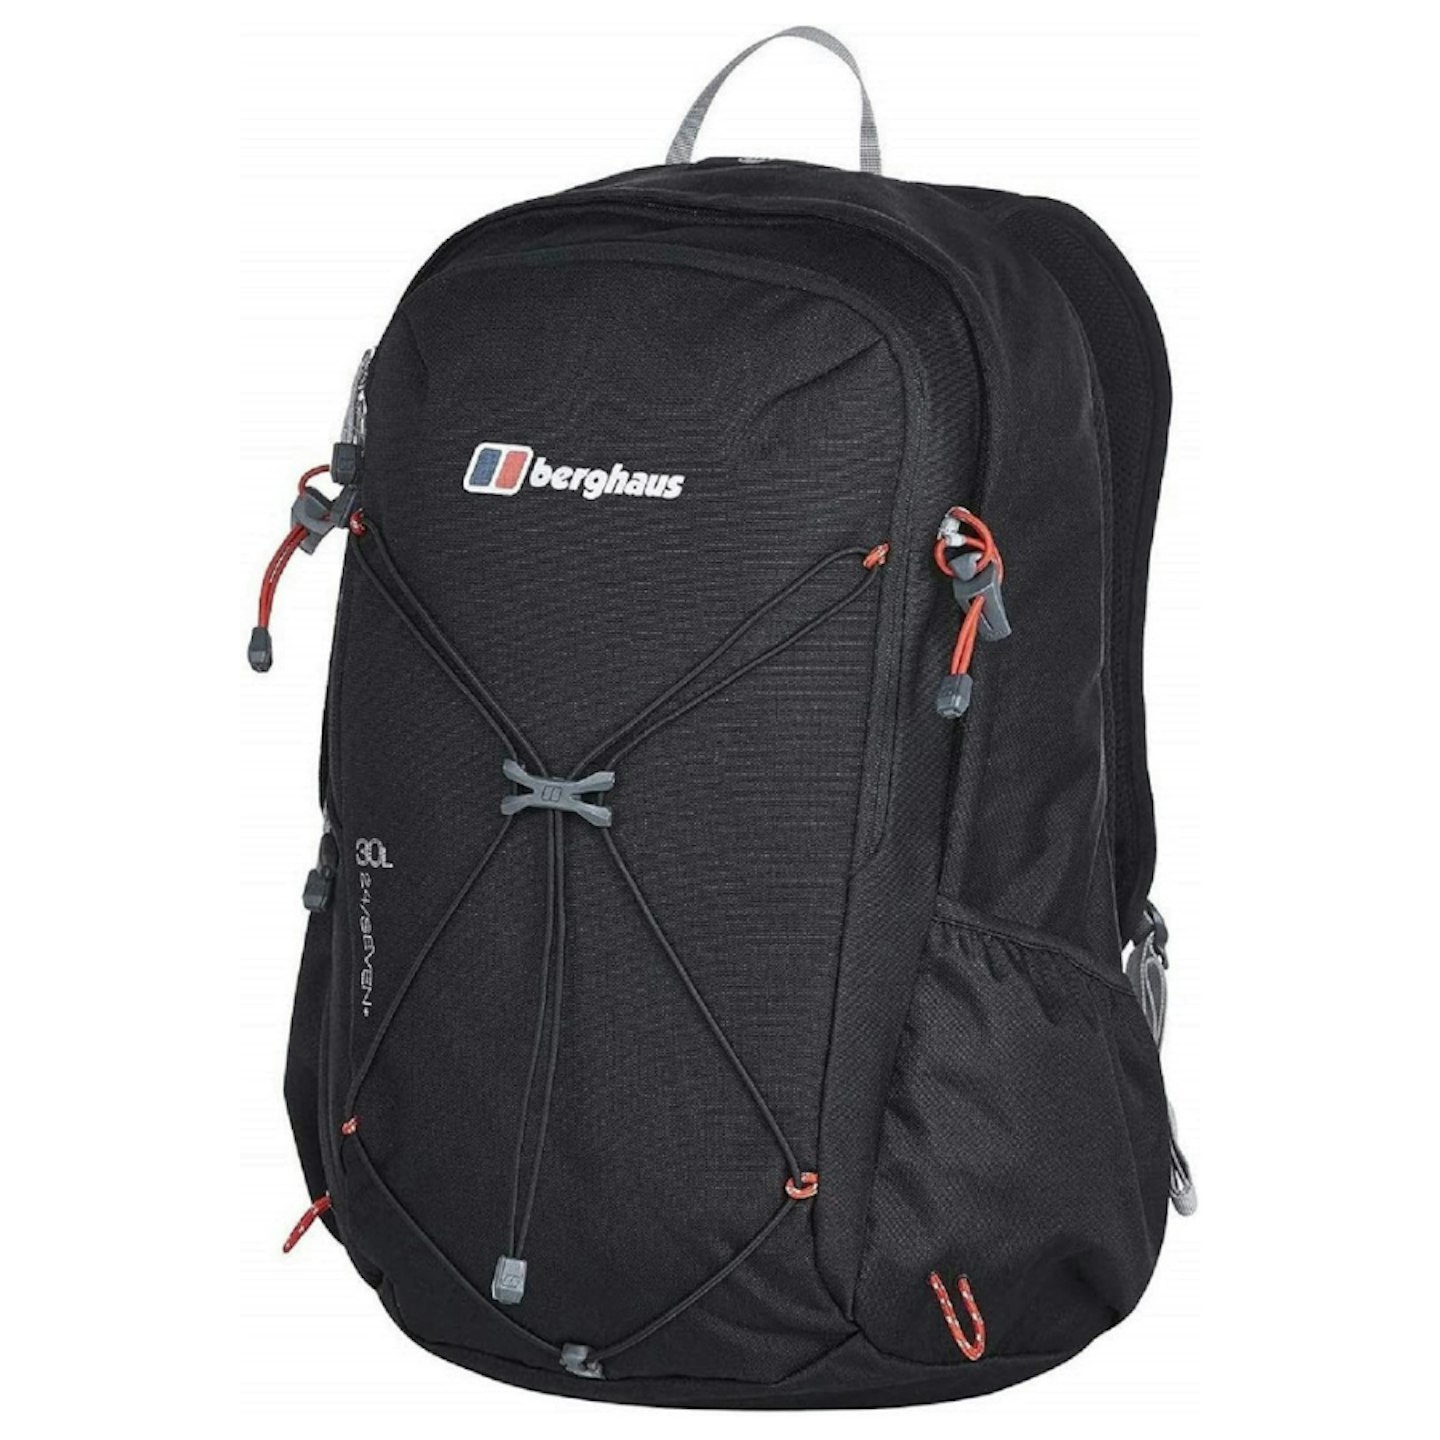 Berghaus Unisex Twnty4Seven Plus Backpack 30 Litre